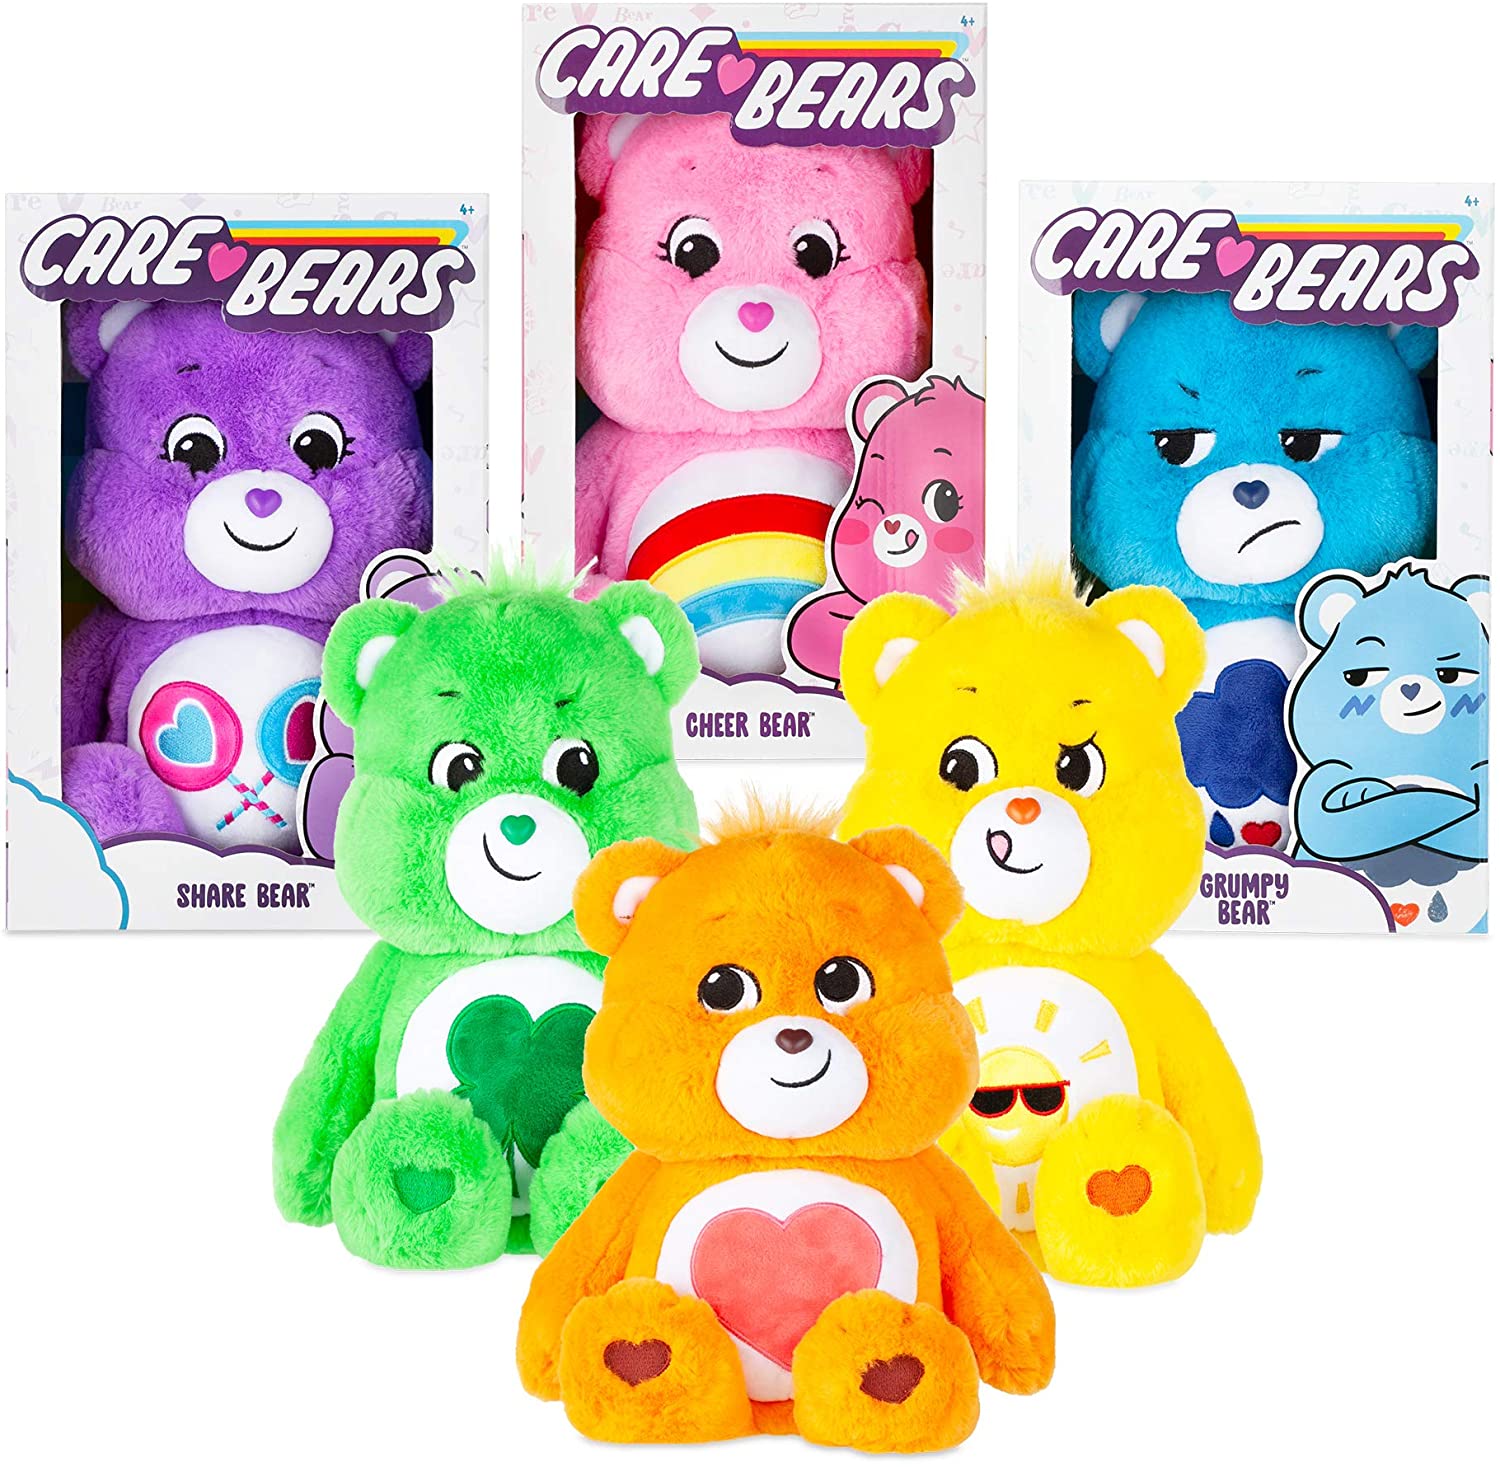 2020 Care Bears 14 Medium Plush Soft Huggable Material Funshine Bear in Hand for sale online 